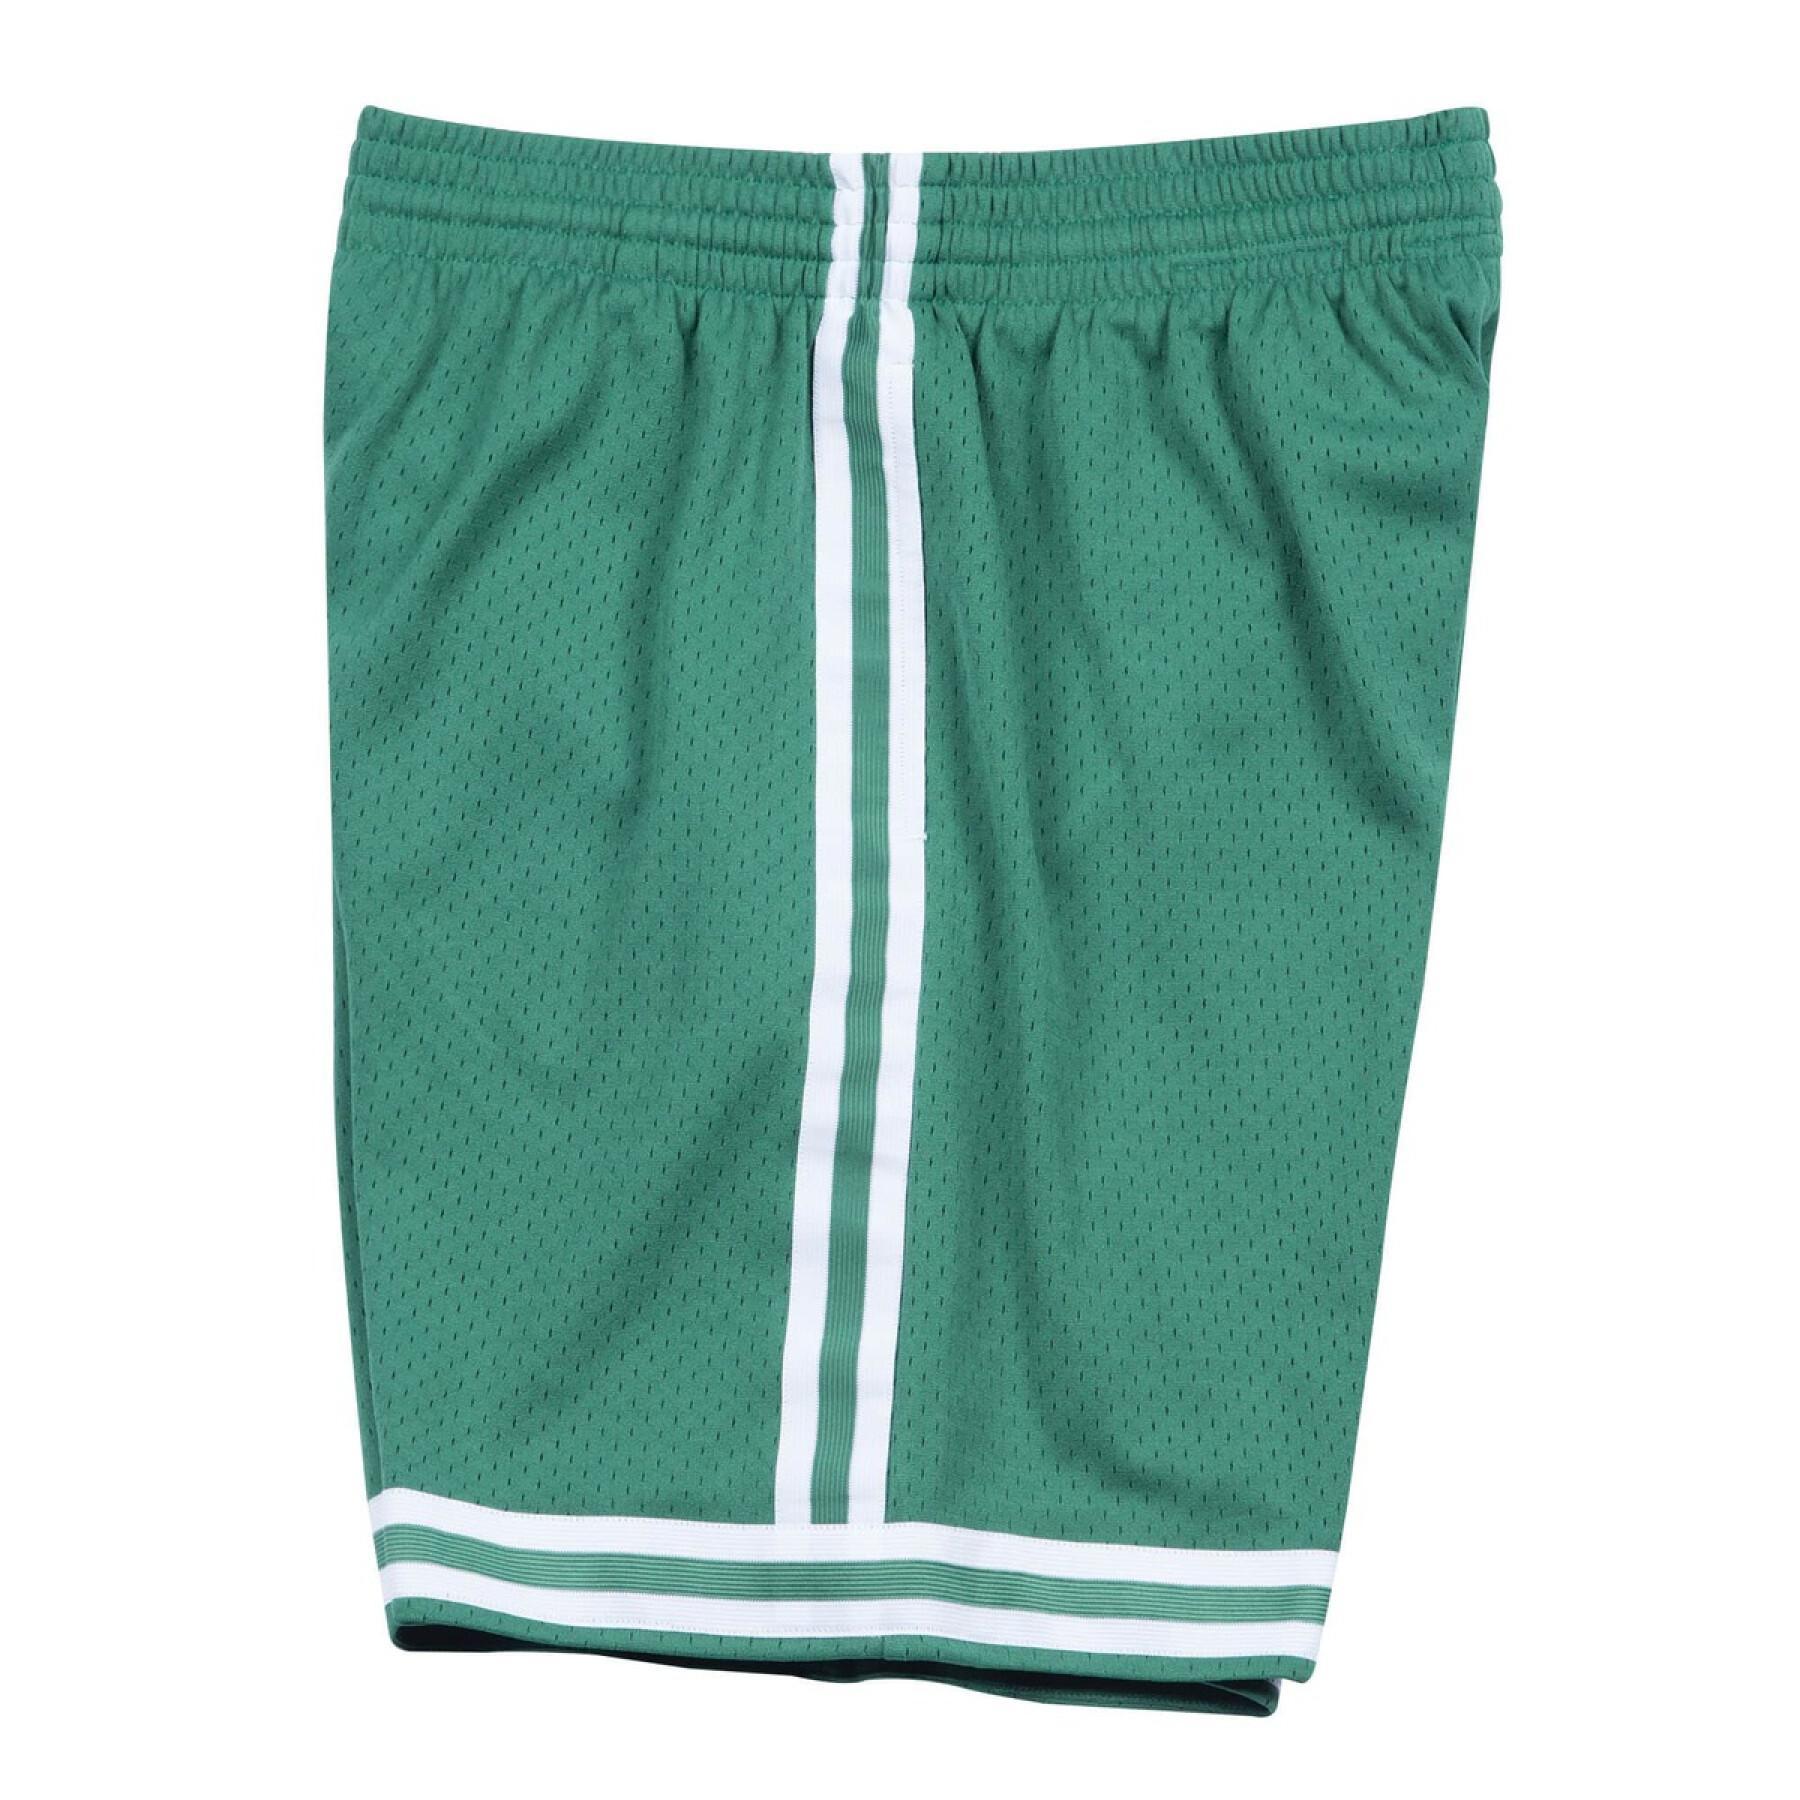 Pantalón corto Boston Celtics nba